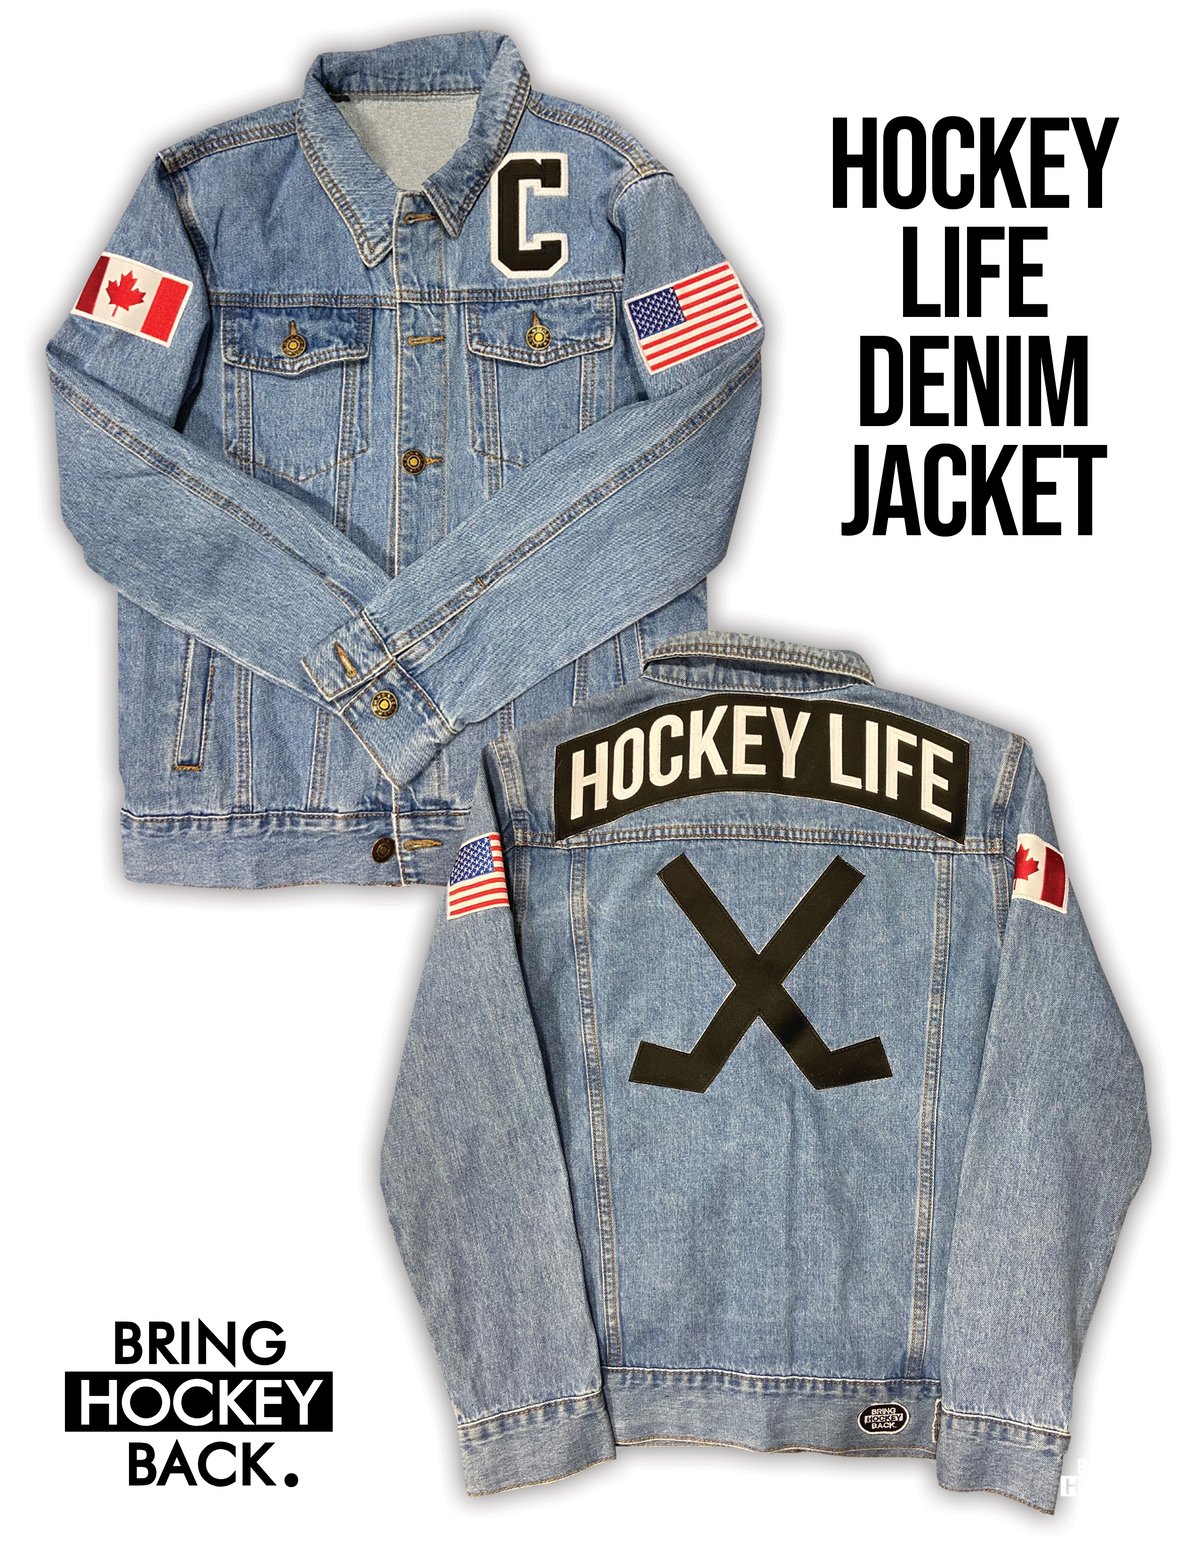 Hockey Life Denim Jacket